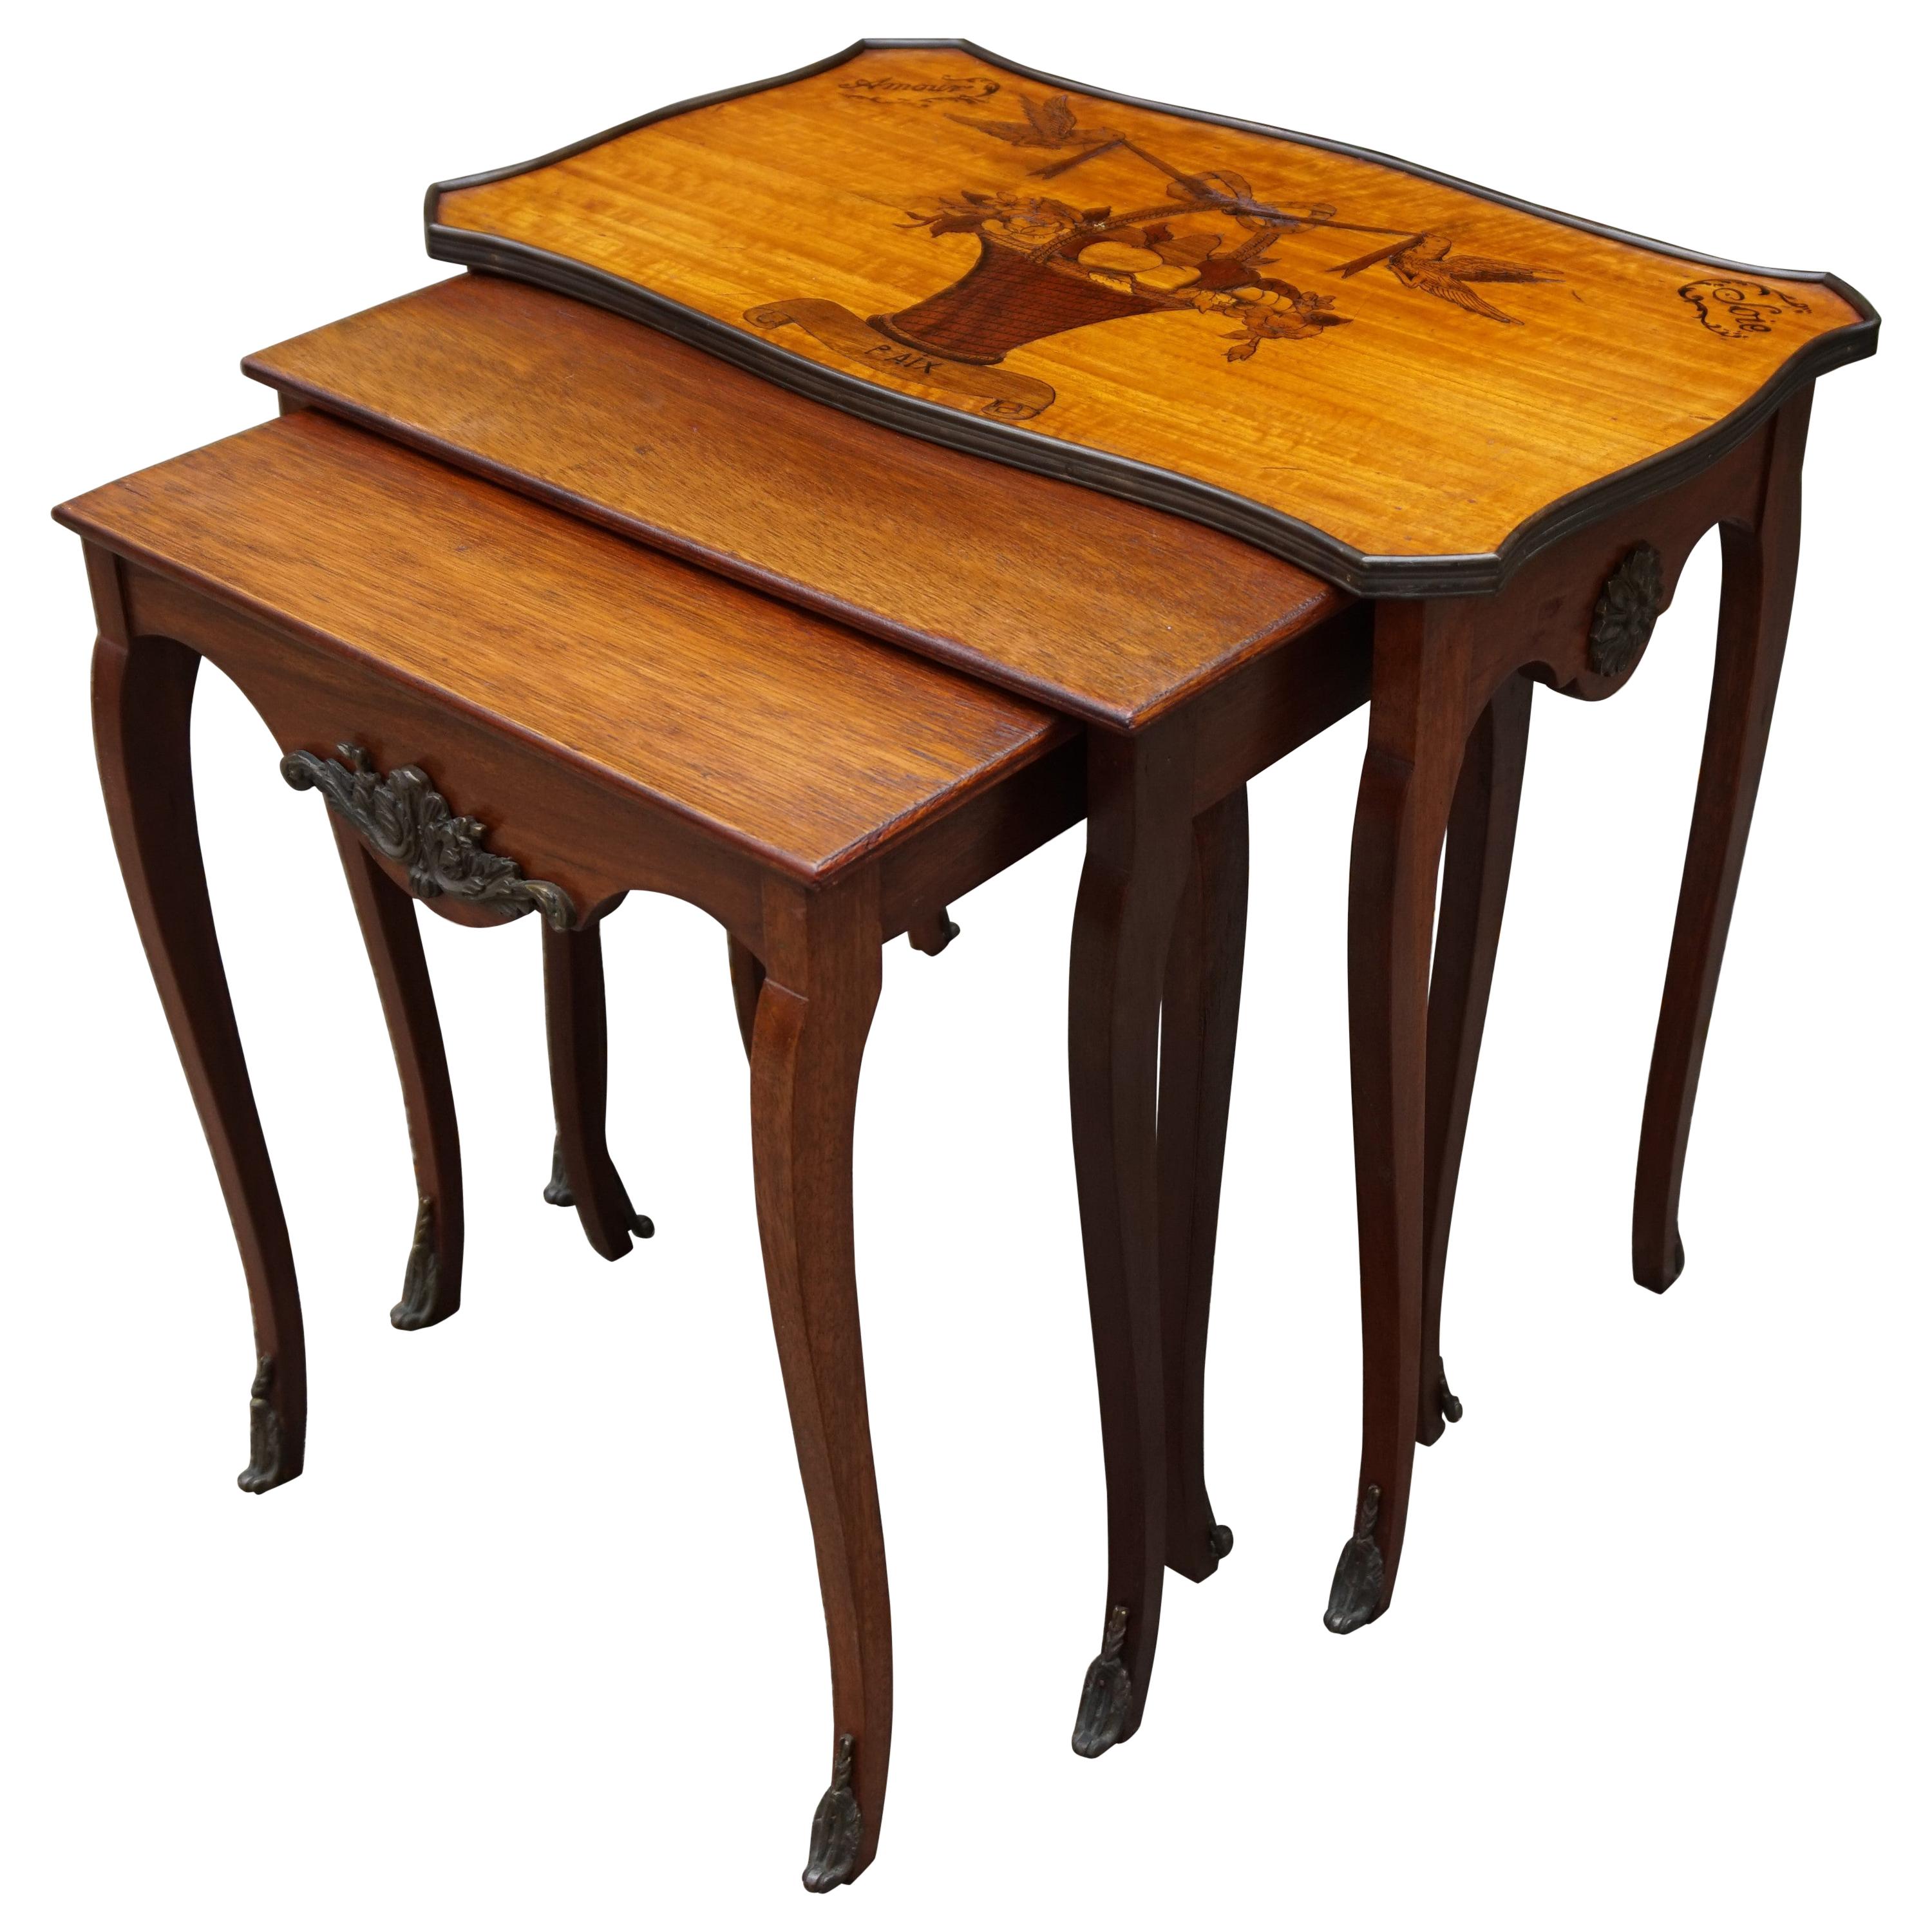 Ensemble antique de tables gigognes en bois de noyer. Thème de l'amour incrusté et ornements en bronze